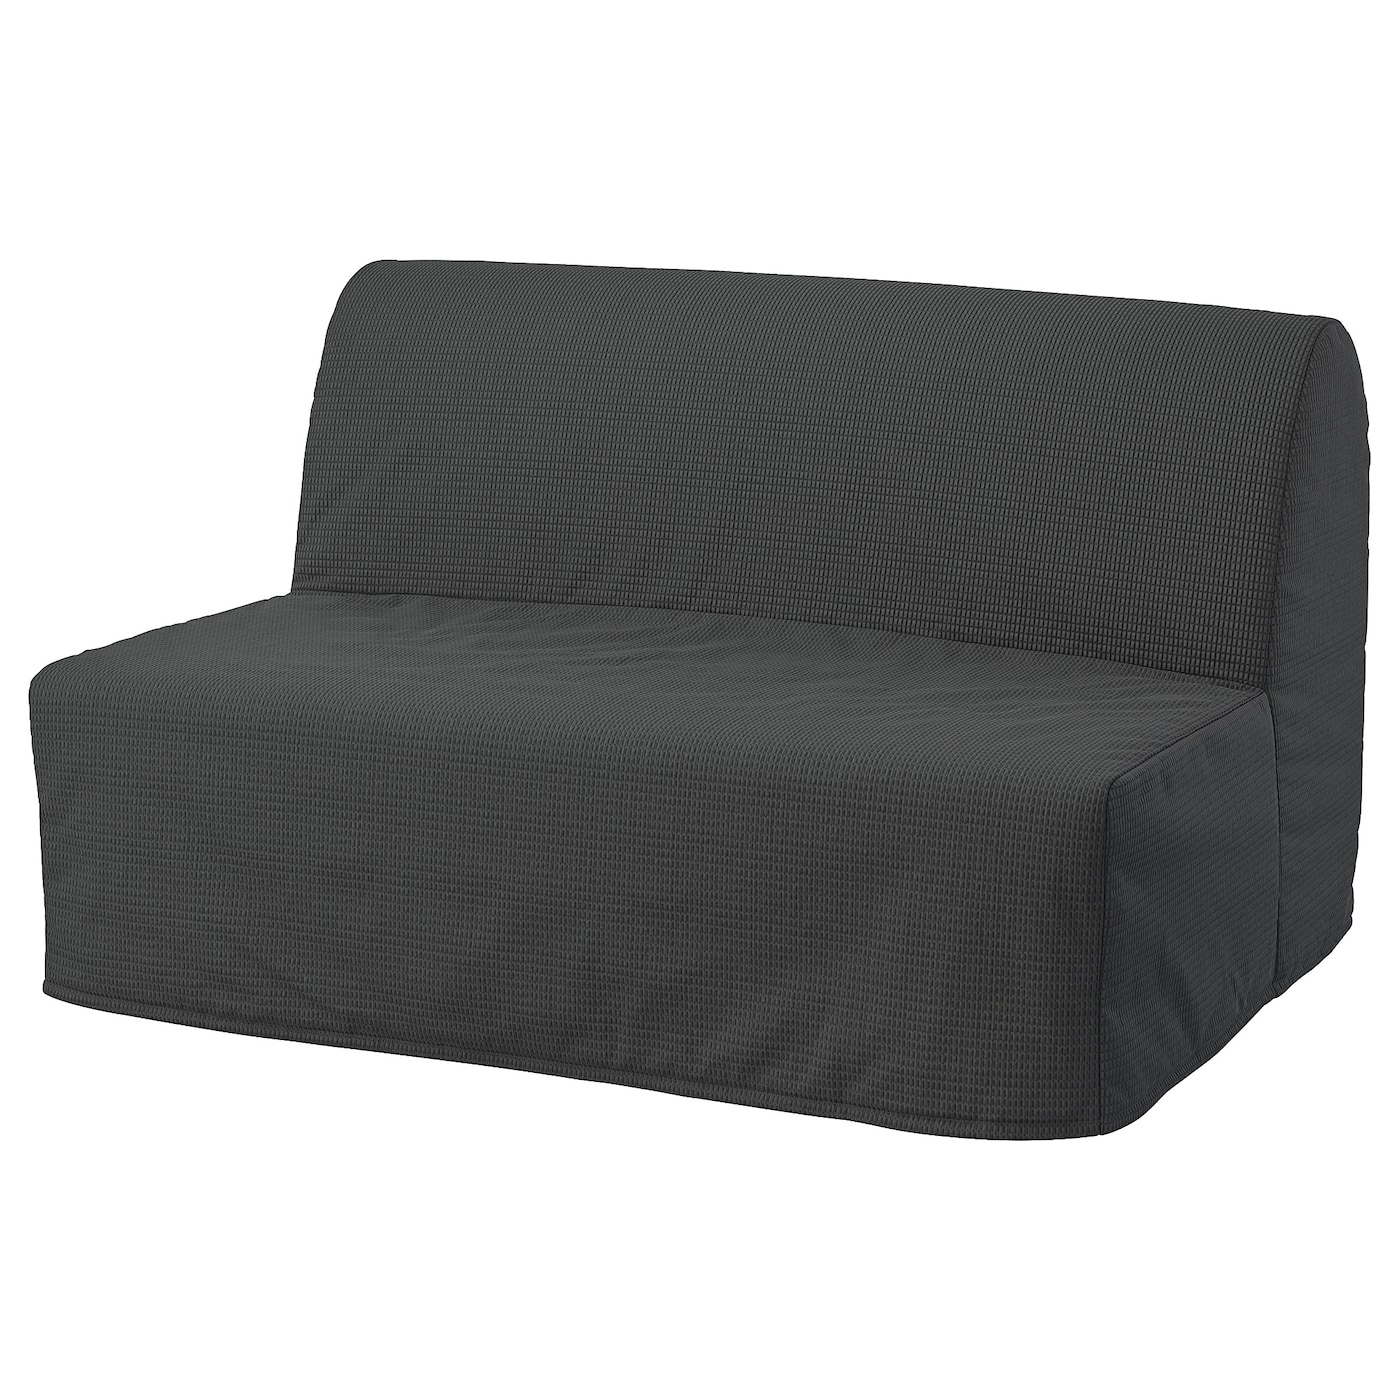 диван кровать шарм дизайн бит 2 серый кровать ЛИКСЕЛЕ ХОВЕТ 2 дивана-кровати с откидной спинкой, Вансбро темно-серый LYCKSELE HÅVET IKEA